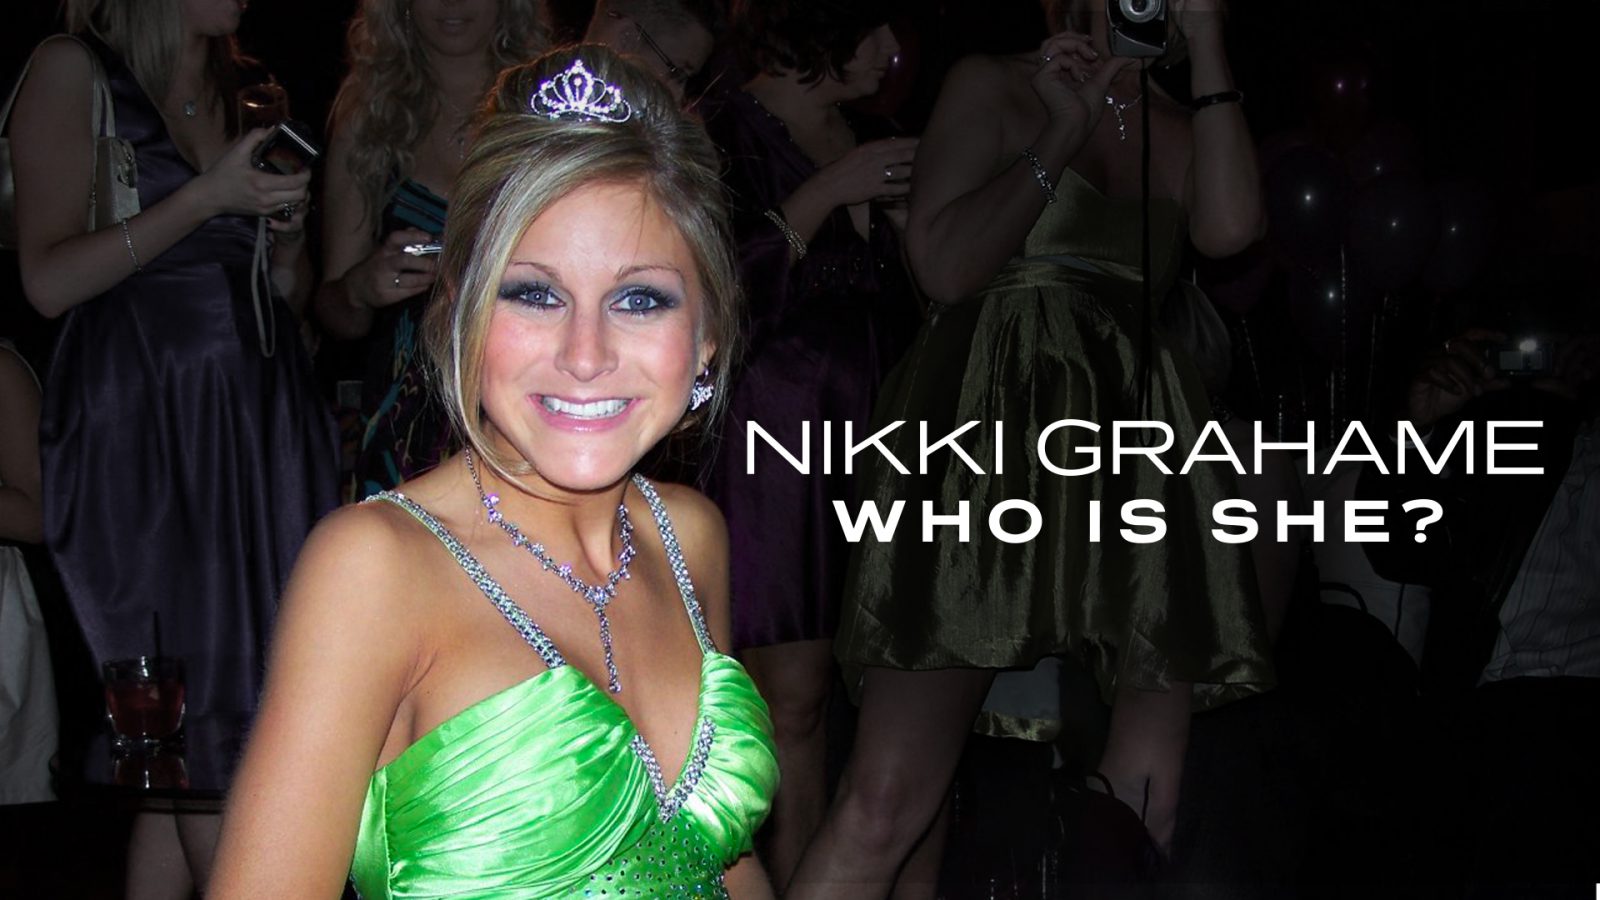 Nikki Grahame: Who is She? (Angel Eye Media for Channel 4)